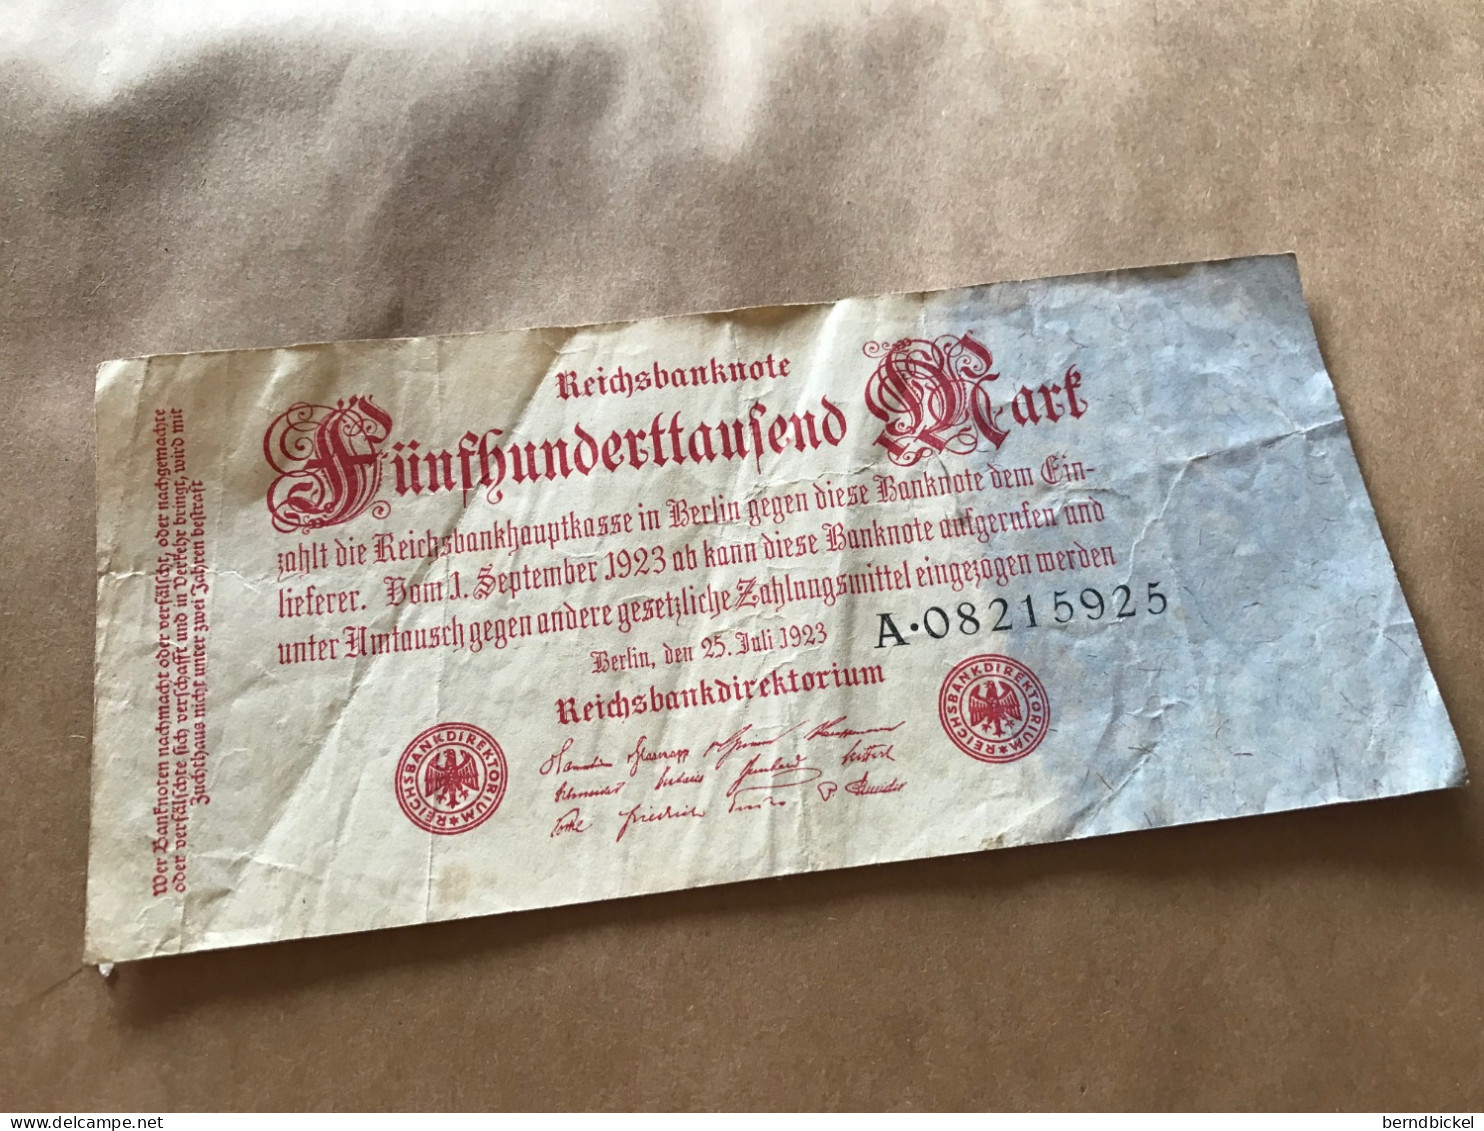 Banknote Geldschein Reichsbanknote Deutsches Reich 500.000 Mark 1923 - 500000 Mark